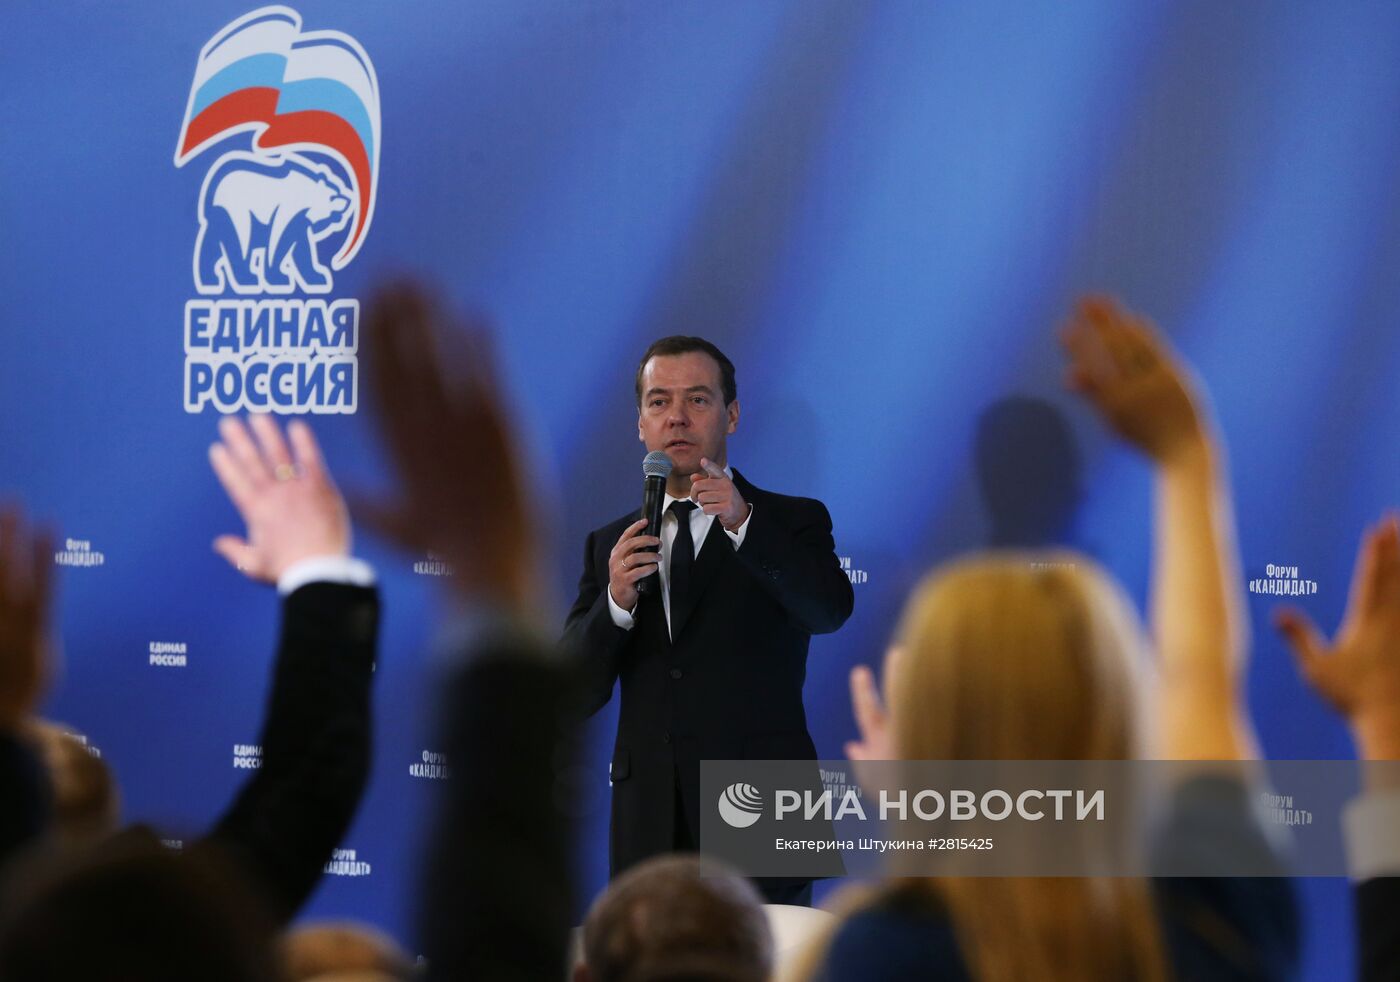 Премьер-министр РФ Д. Медведев выступил на предвыборном форуме ЕР "Кандидат"